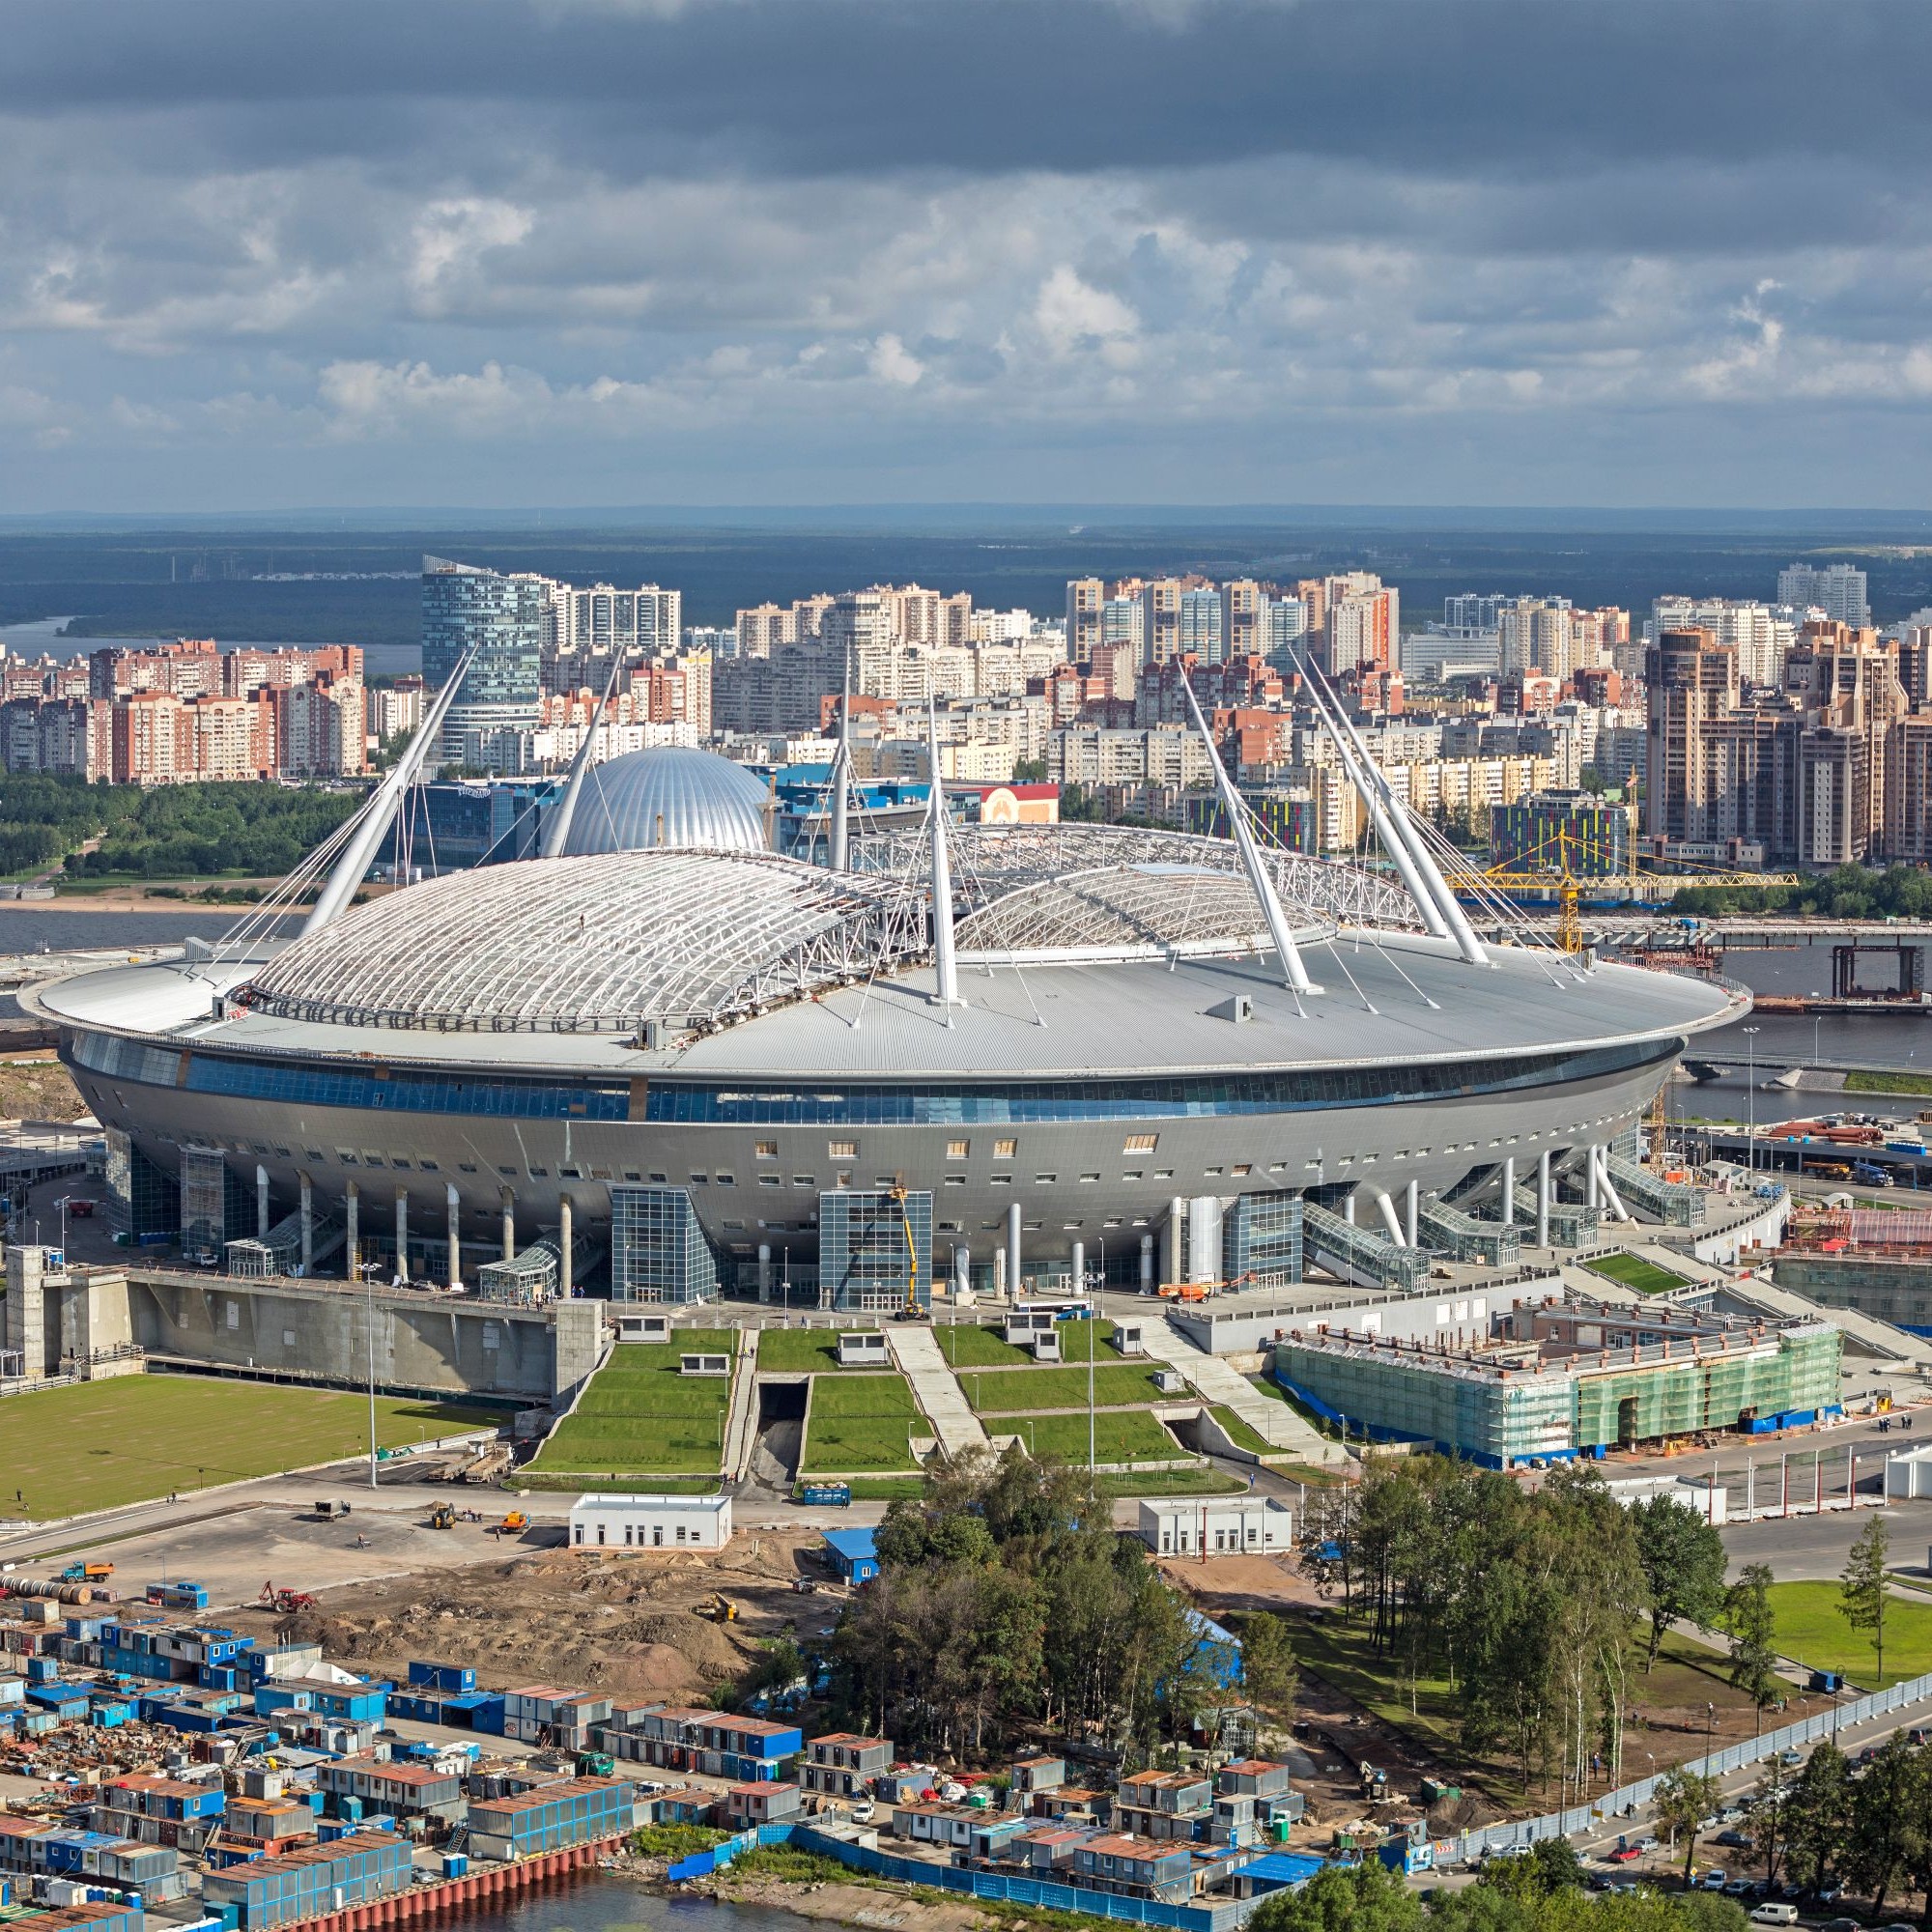 Das Sankt Petersburg Stadion (oder auch Krestowski-Stadion genannt) wurde extra für die Weltmeisterschaft gebaut und kostete knapp eine Milliarde Euro. Sieben Spiele werden hier stattfinden.